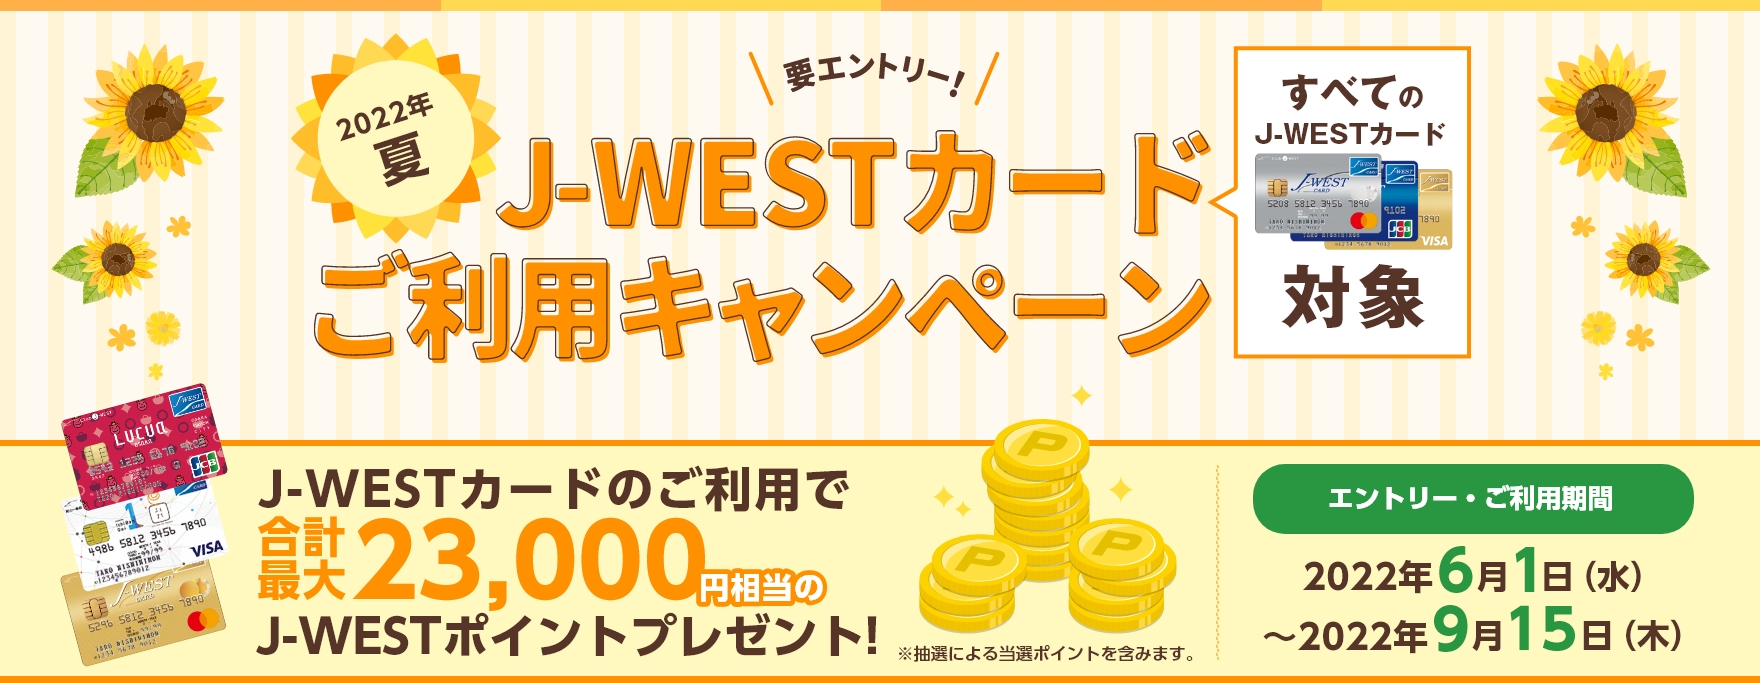 2022年夏 J-WESTカードご利用キャンペーン